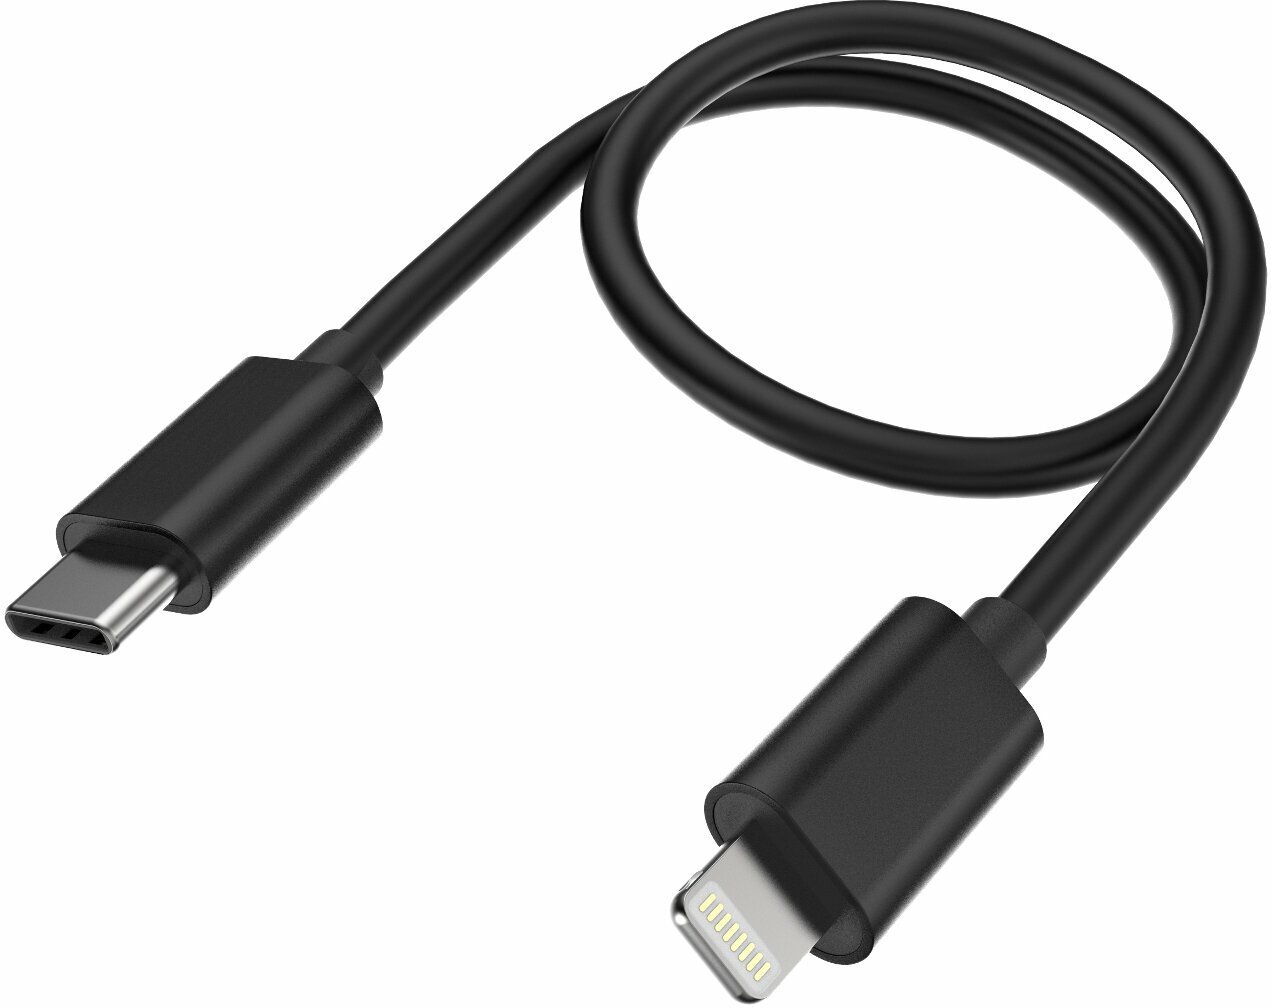 USB Cable FiiO LT-LT3 Black 20 cm USB Cable